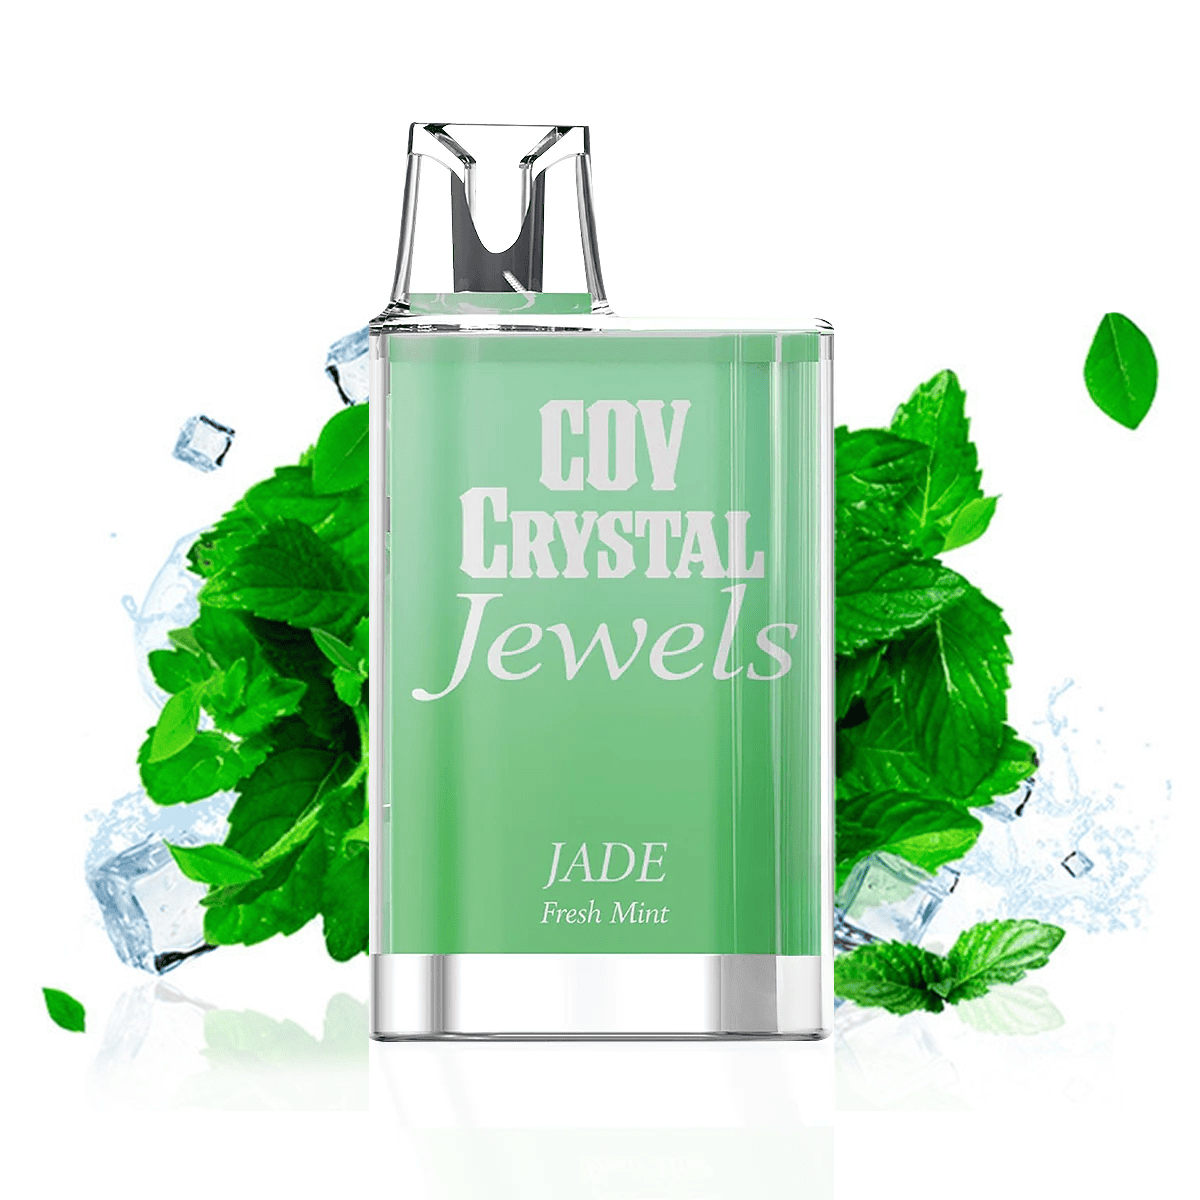 COV Crystal - Fresh Mint 20mg